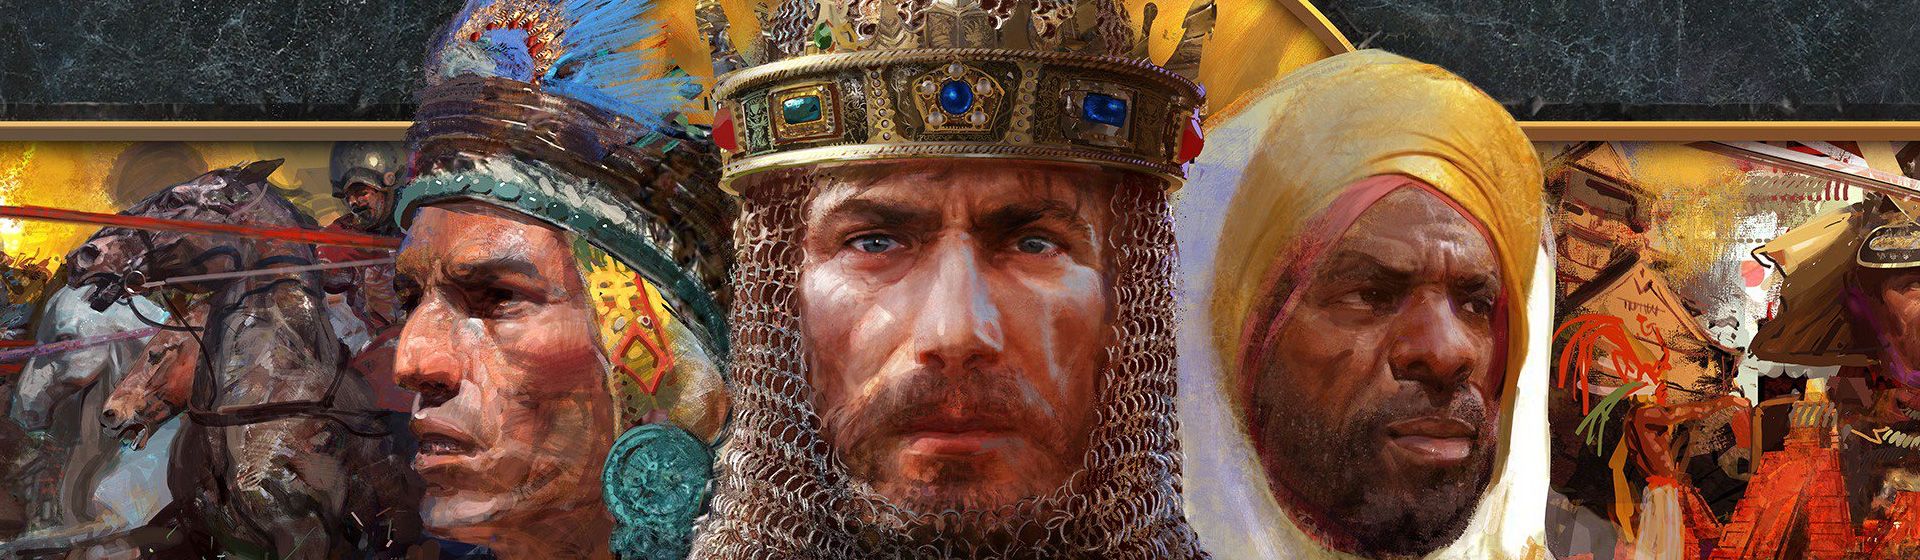 Capa do post: Códigos Age of Empires 2: manhas e macetes do jogo de estratégia